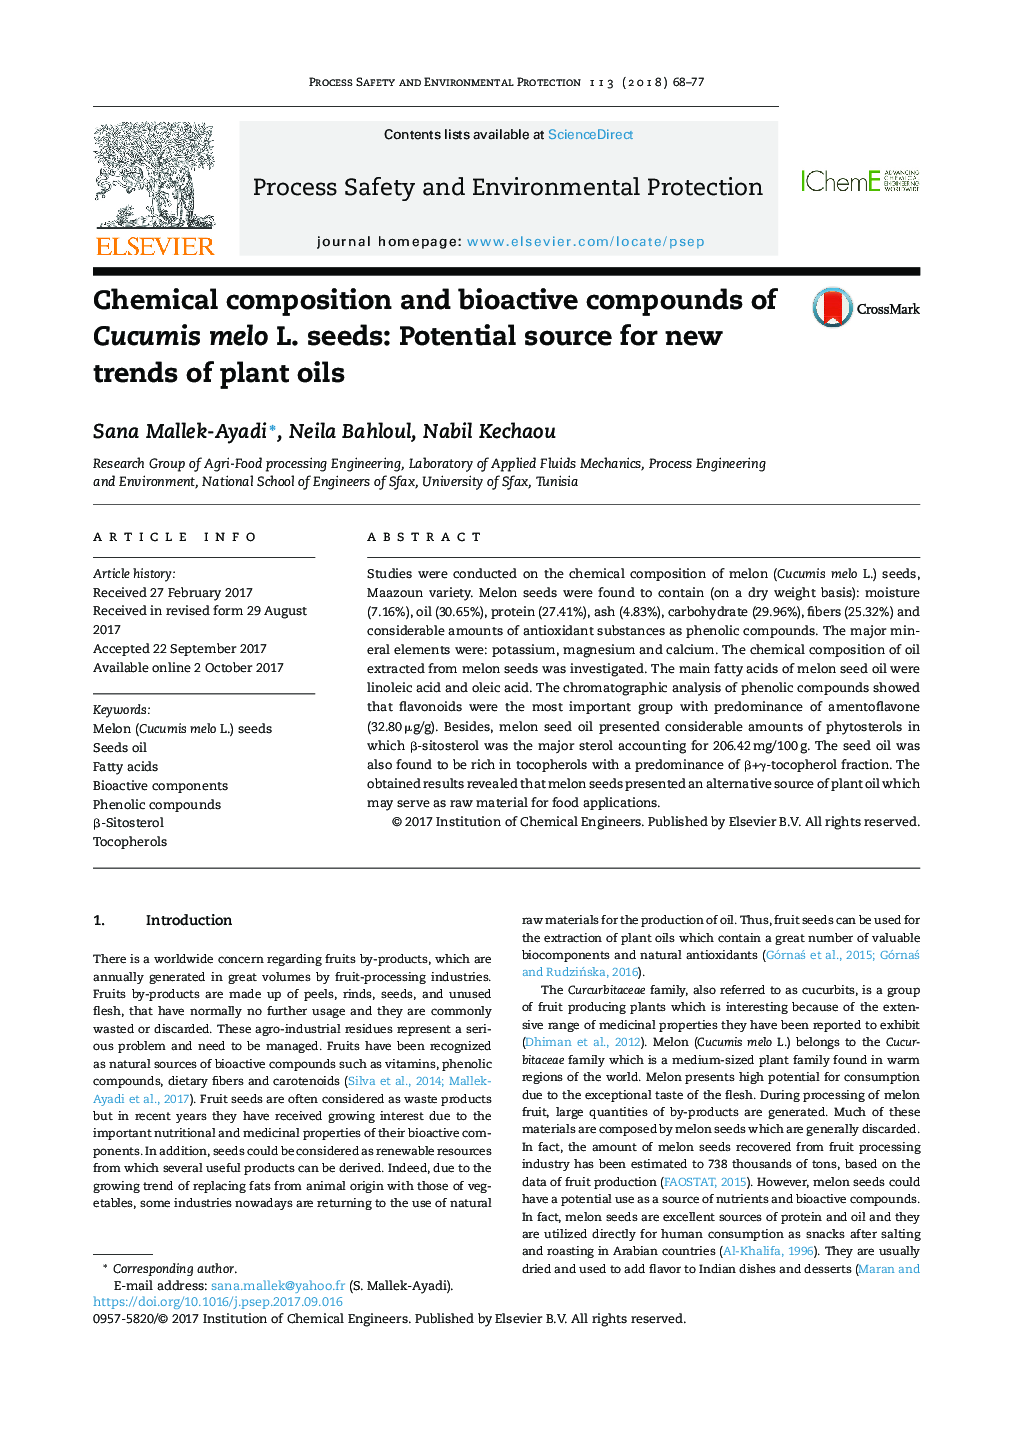 ترکیب شیمیایی و ترکیبات زیست فعال دانه های Cucumis melo L.: منبع بالقوه برای روندهای جدید روغن های گیاهی